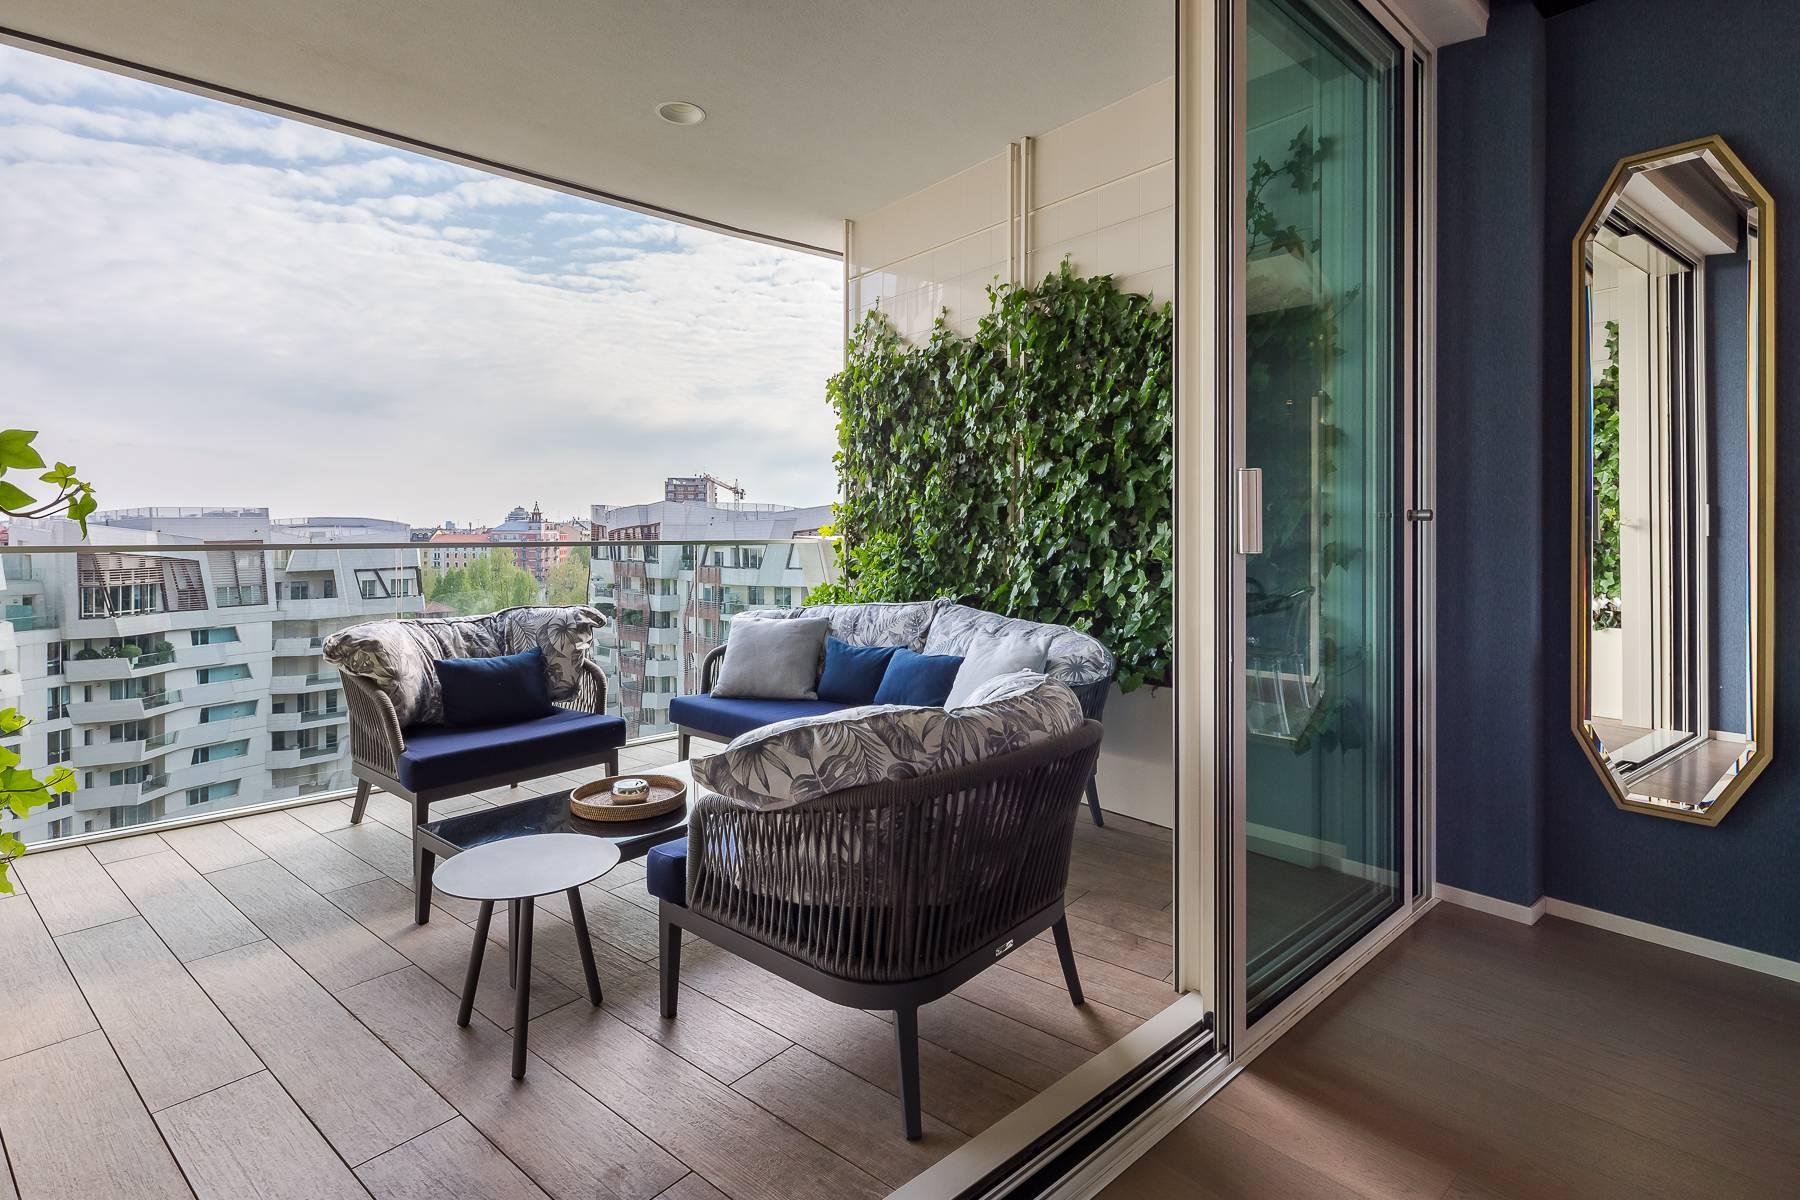 Wunderschöne möblierte Design-Wohnung mit Terrassen im CitylIfe Stadtviertel - 16